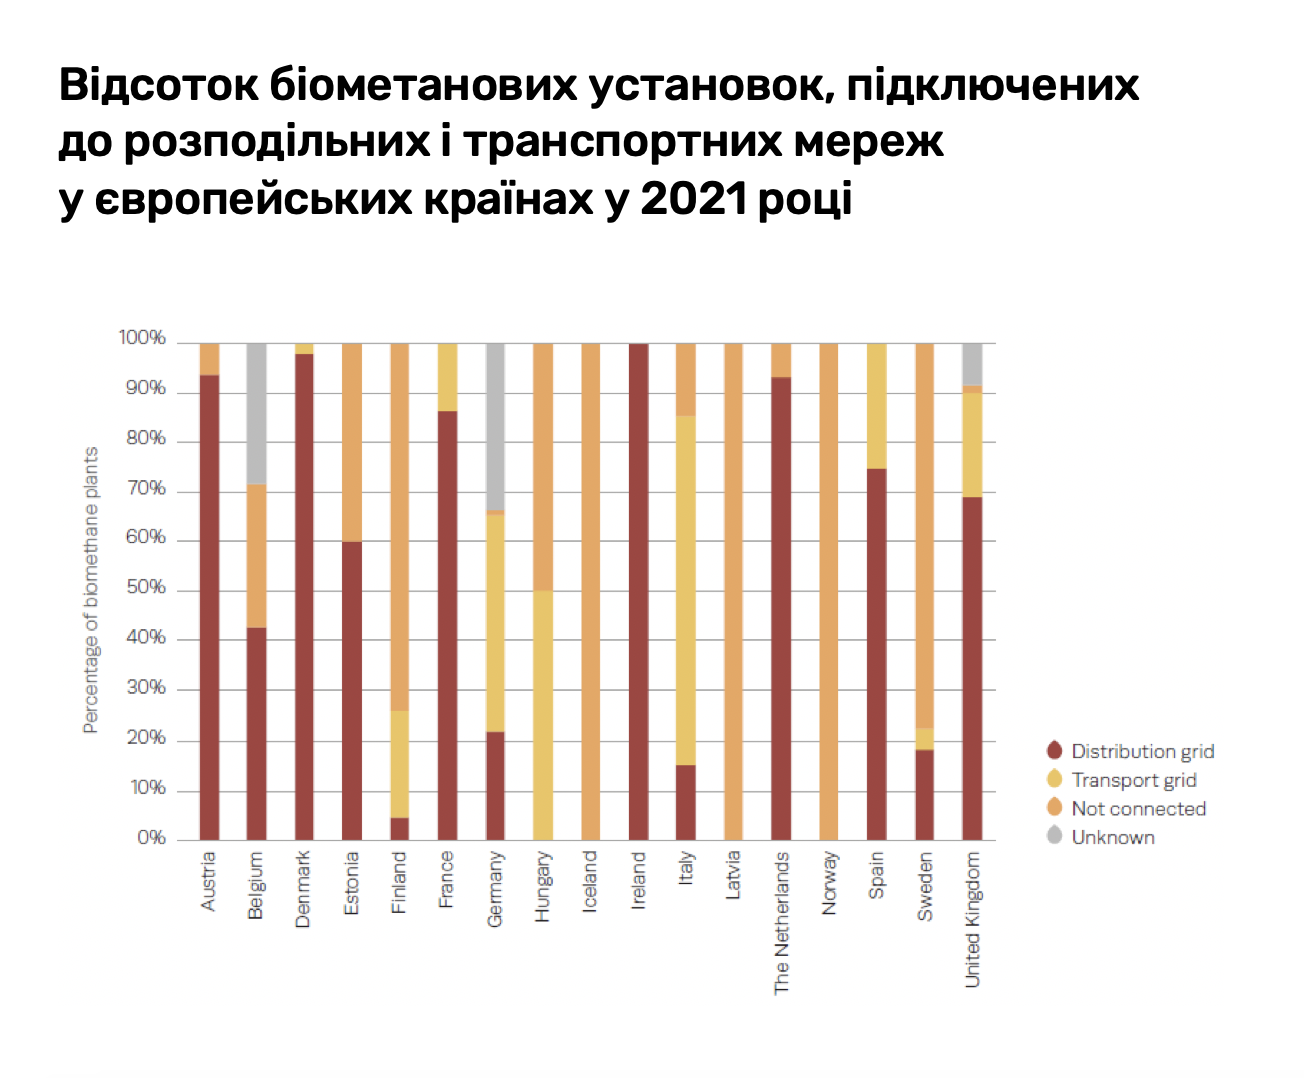 Відсоток біометанових установок, підключених до розподільних і транспортних мереж у європейських країнах у 2021 році